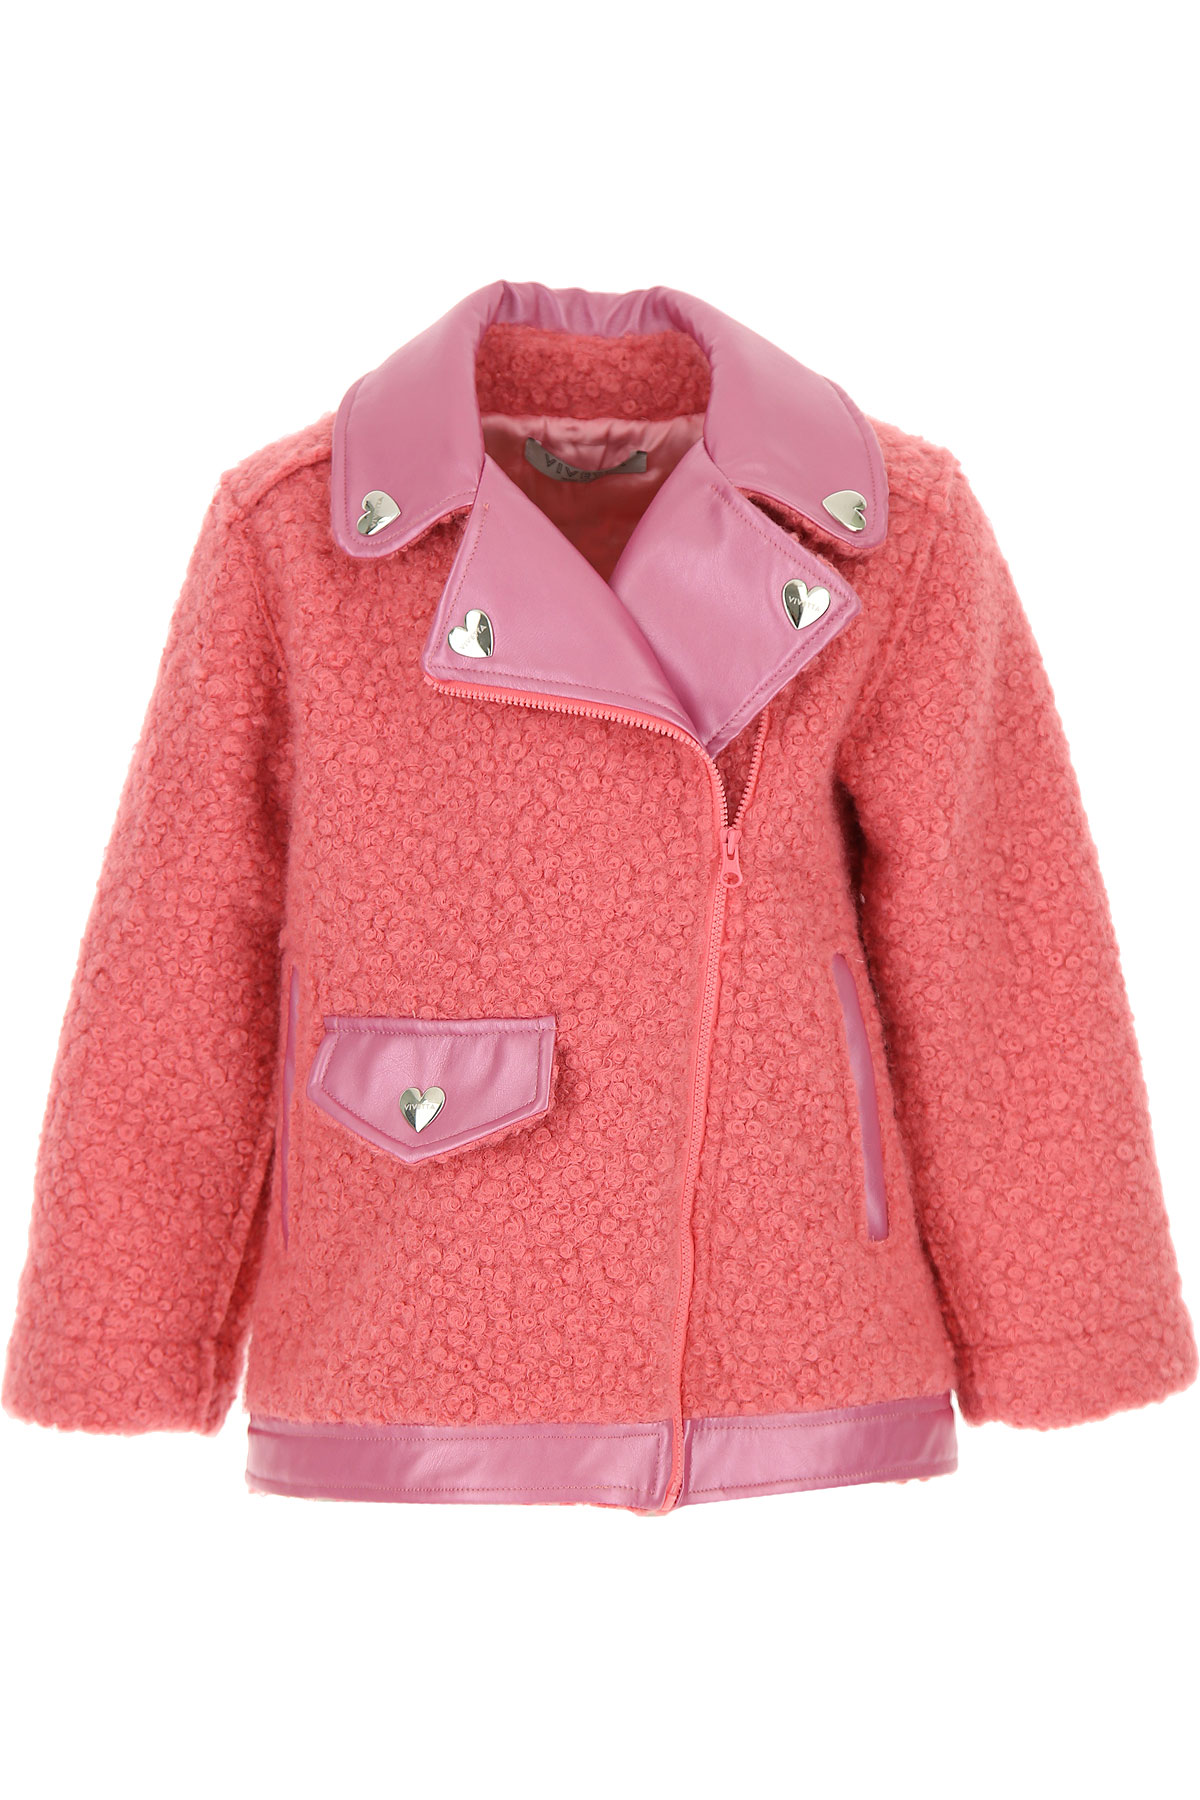 VIvetta Kinder Jacke für Mädchen Günstig im Sale, Pink, Polyester, 2017, 2Y 6Y 8Y